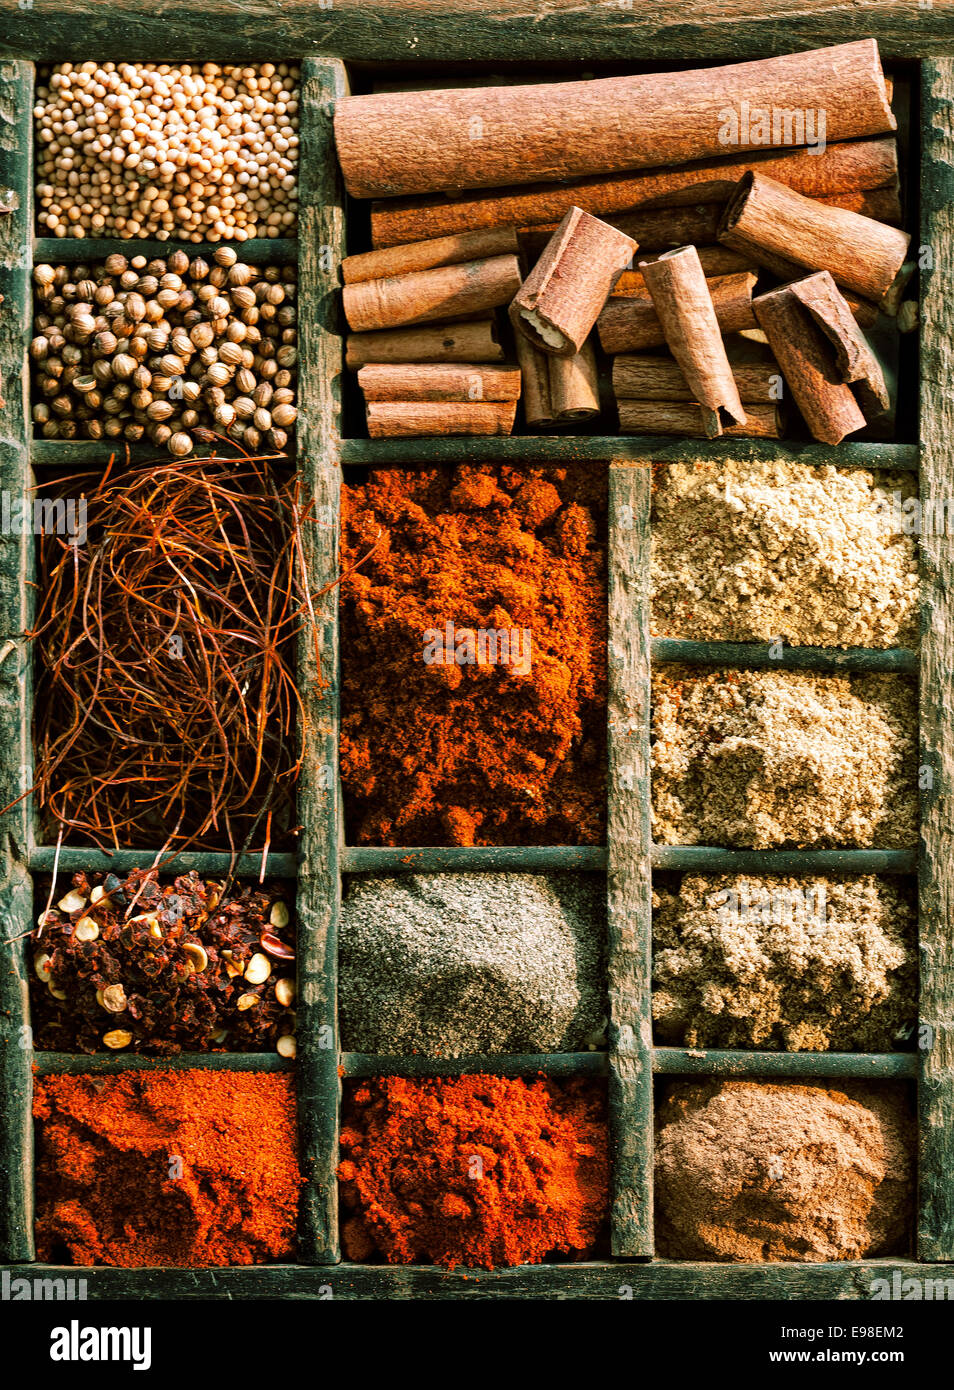 Différents types d'épices, de l'ail en poudre et de cannelle à paprika dans une boîte en bois, high angle Banque D'Images